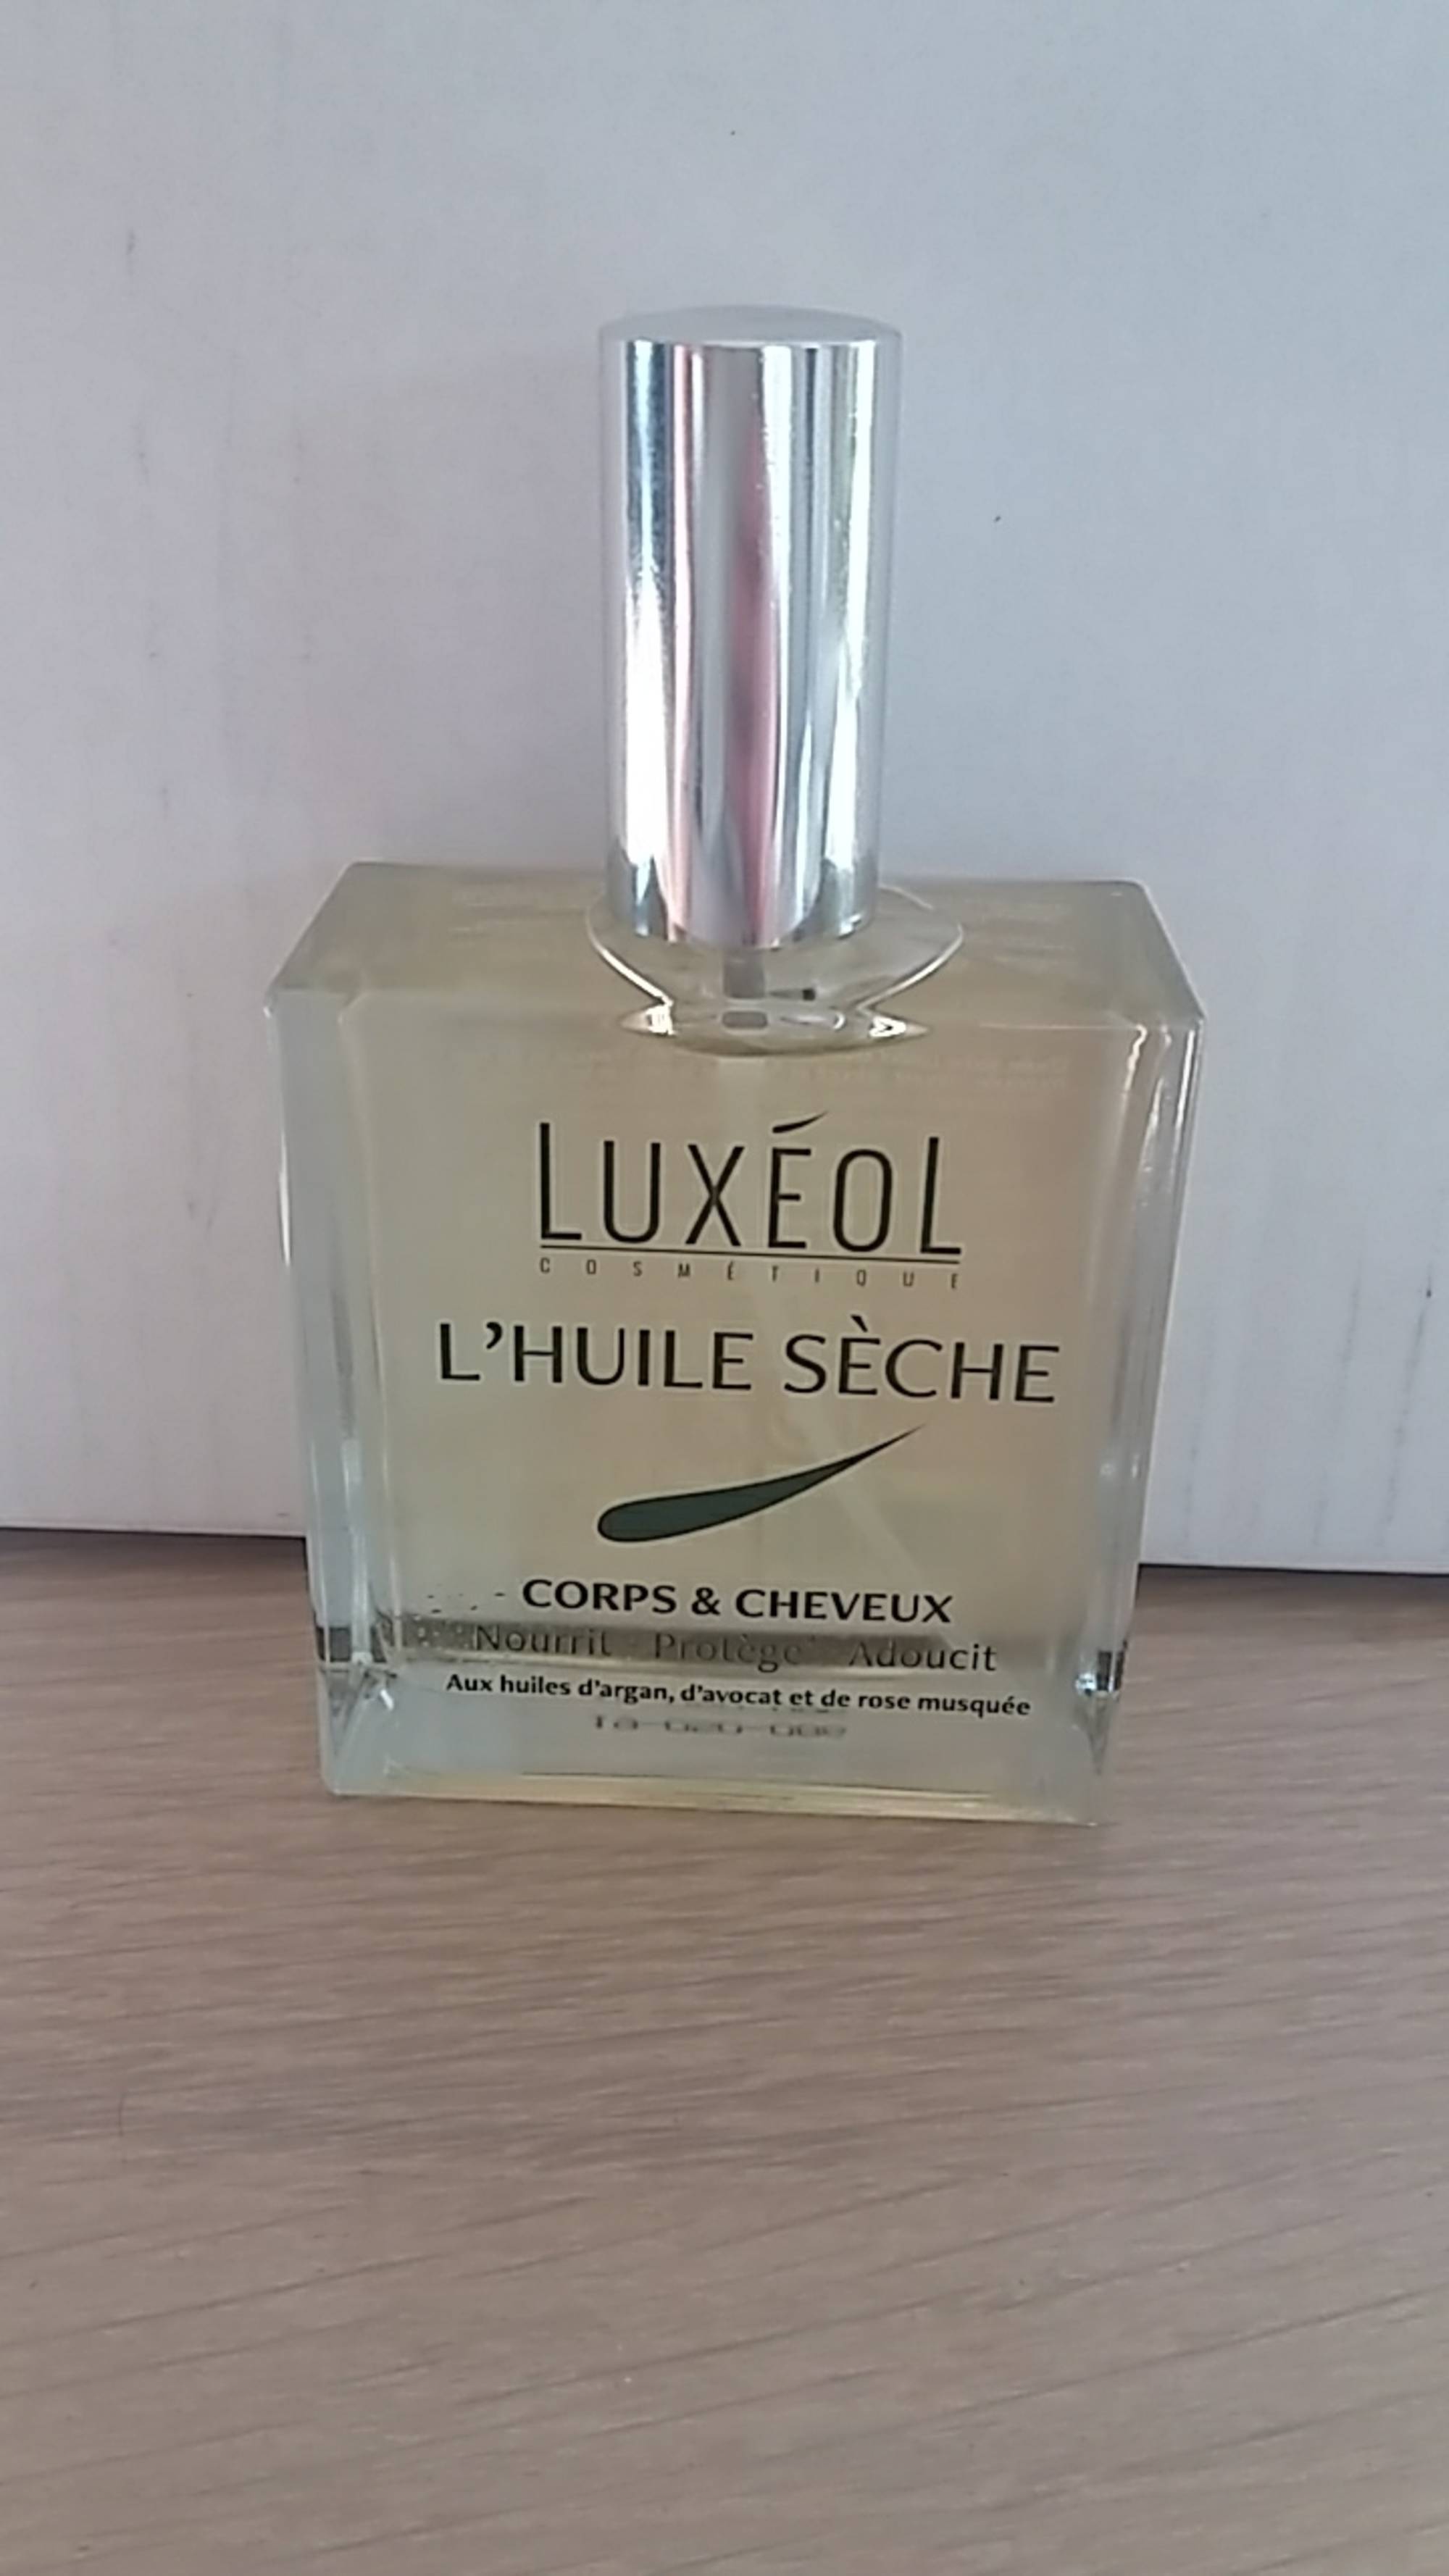 Luxéol L'Huile Sèche Corps & Cheveux - Luxéol.com